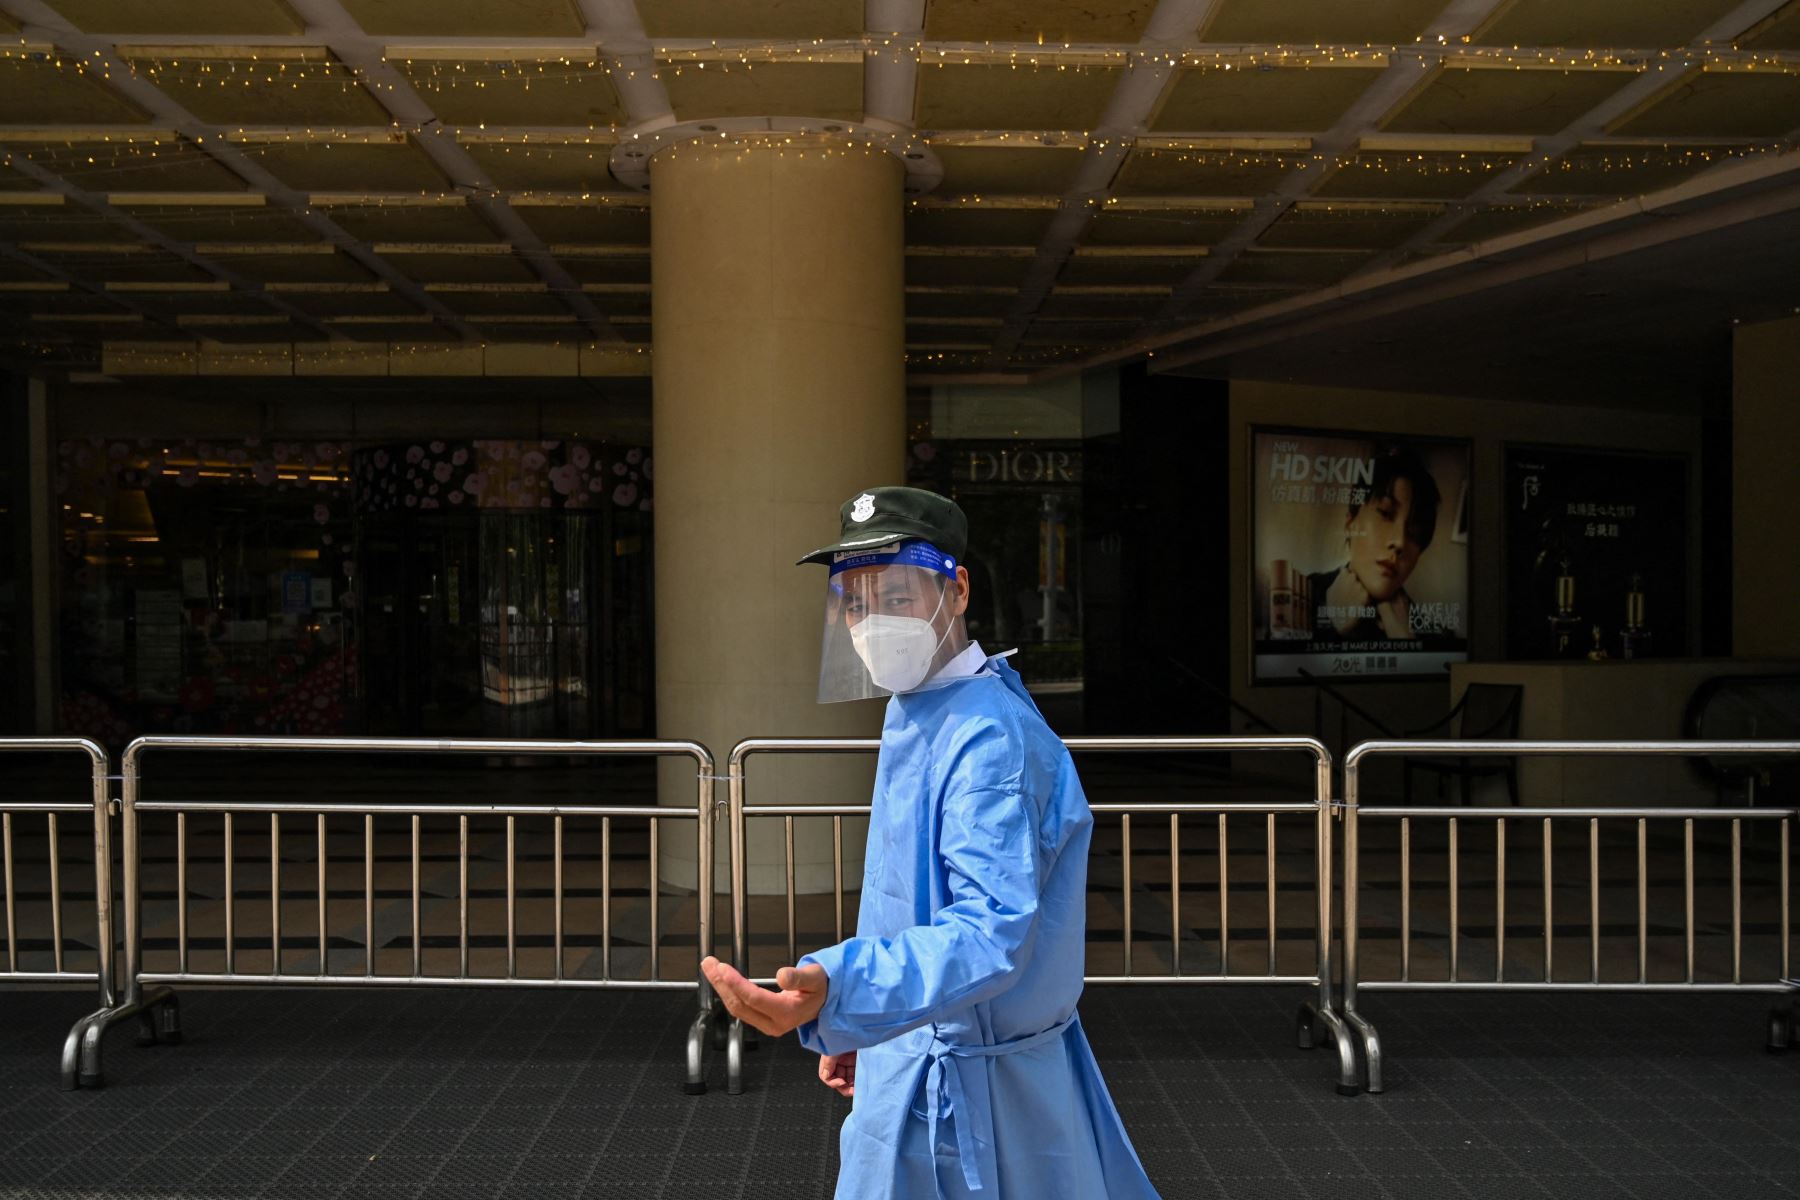 Un guardia de seguridad se encuentra frente a la entrada de un centro comercial cerrado durante un bloqueo de coronavirus Covid-19 en el distrito de Jing